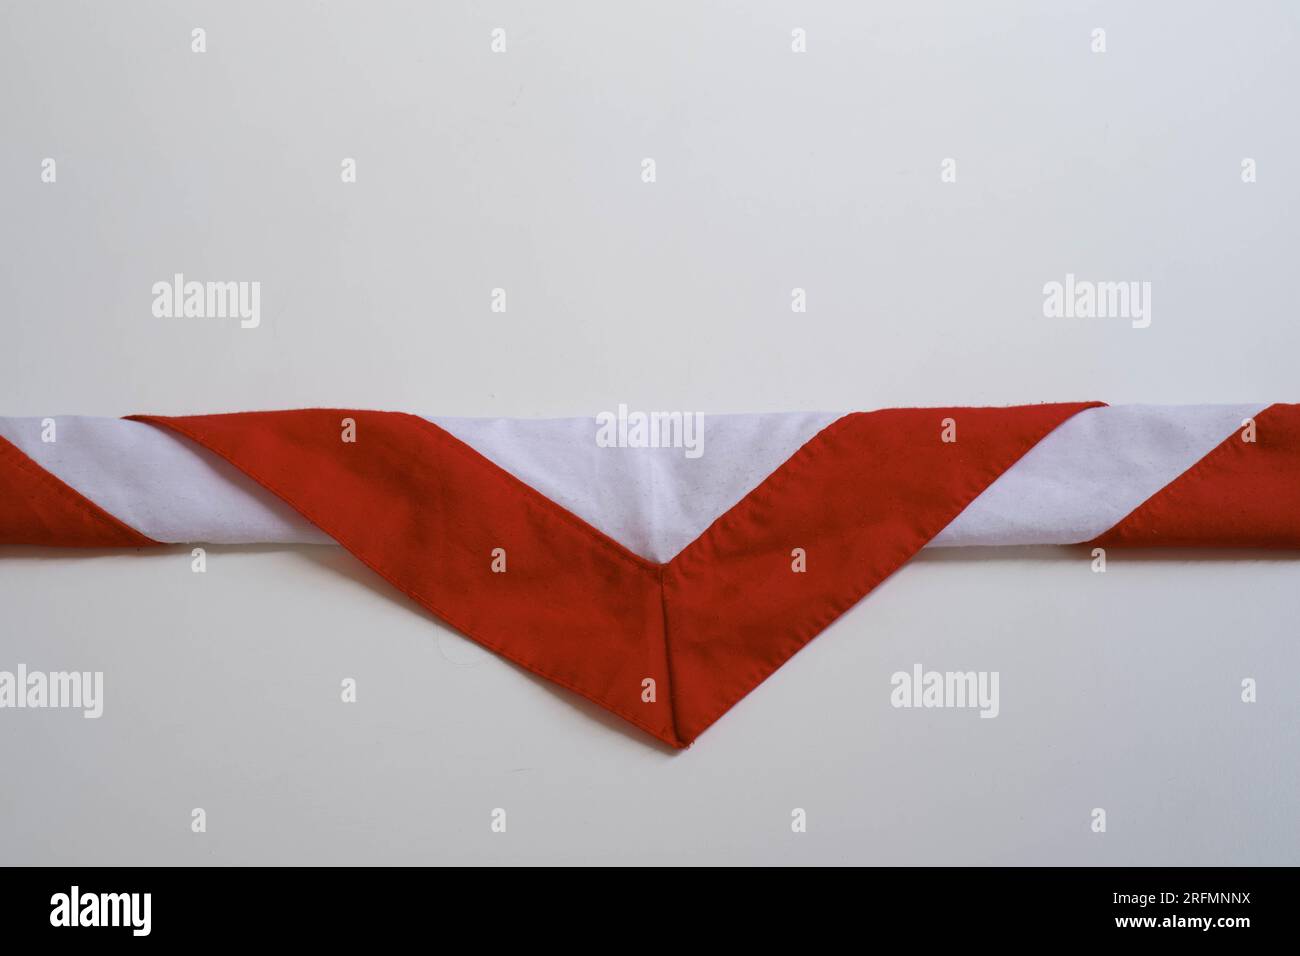 Der dreieckige Schal, der als Teil der Uniform der indonesischen Pfadfinderbewegung Pramuka getragen wird, hat eine rot-weiße Farbe namens Hasduk Stockfoto